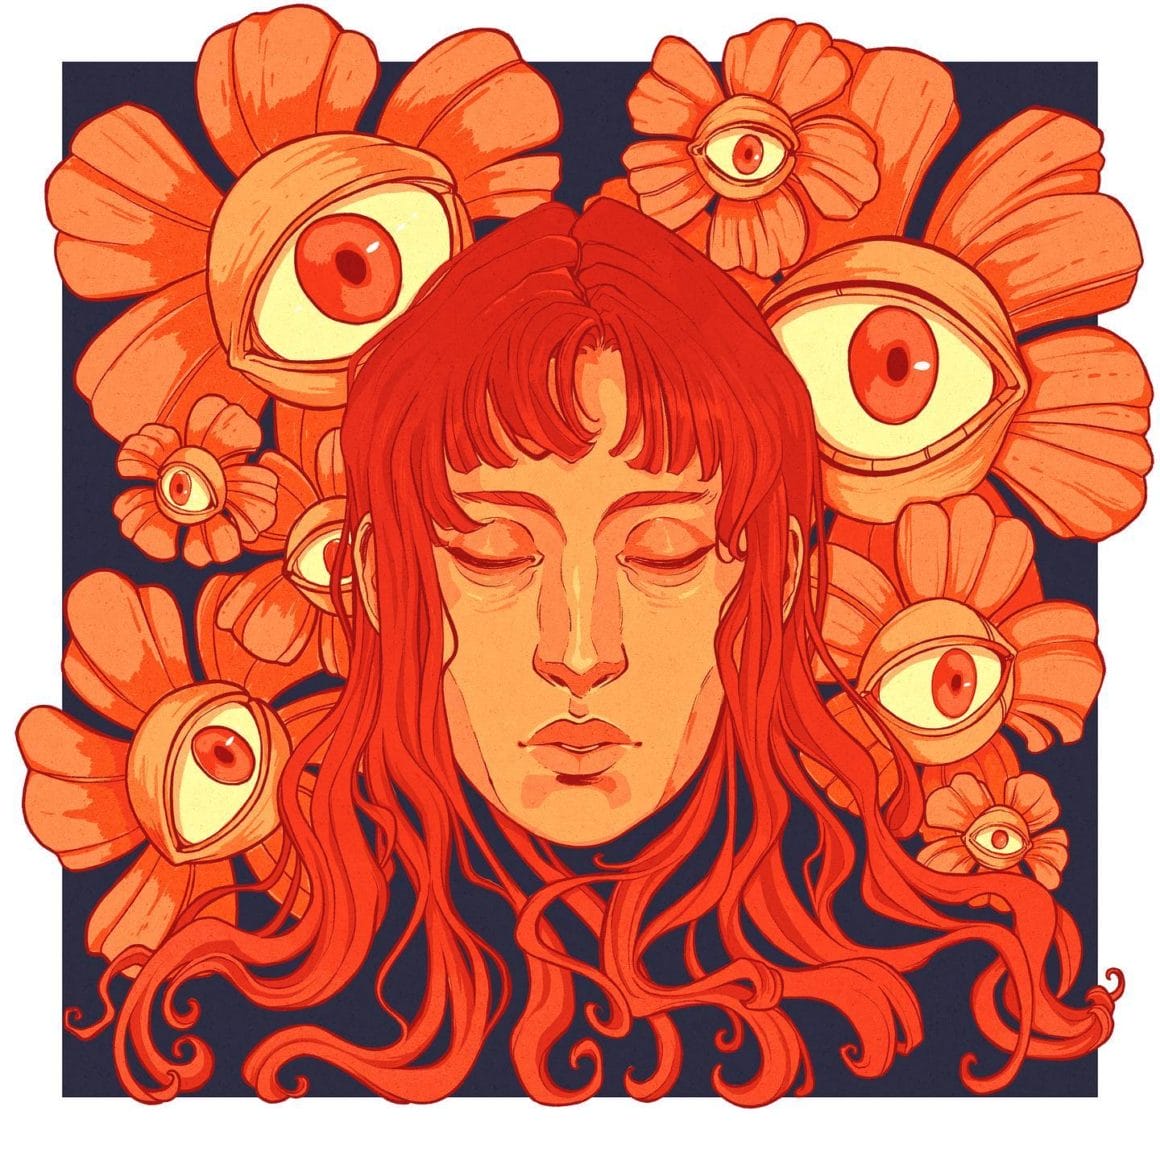 La tête d'une femme orange a les yeux fermés. Autour d'elle, des dizaines de fleurs avec des yeux nous observent